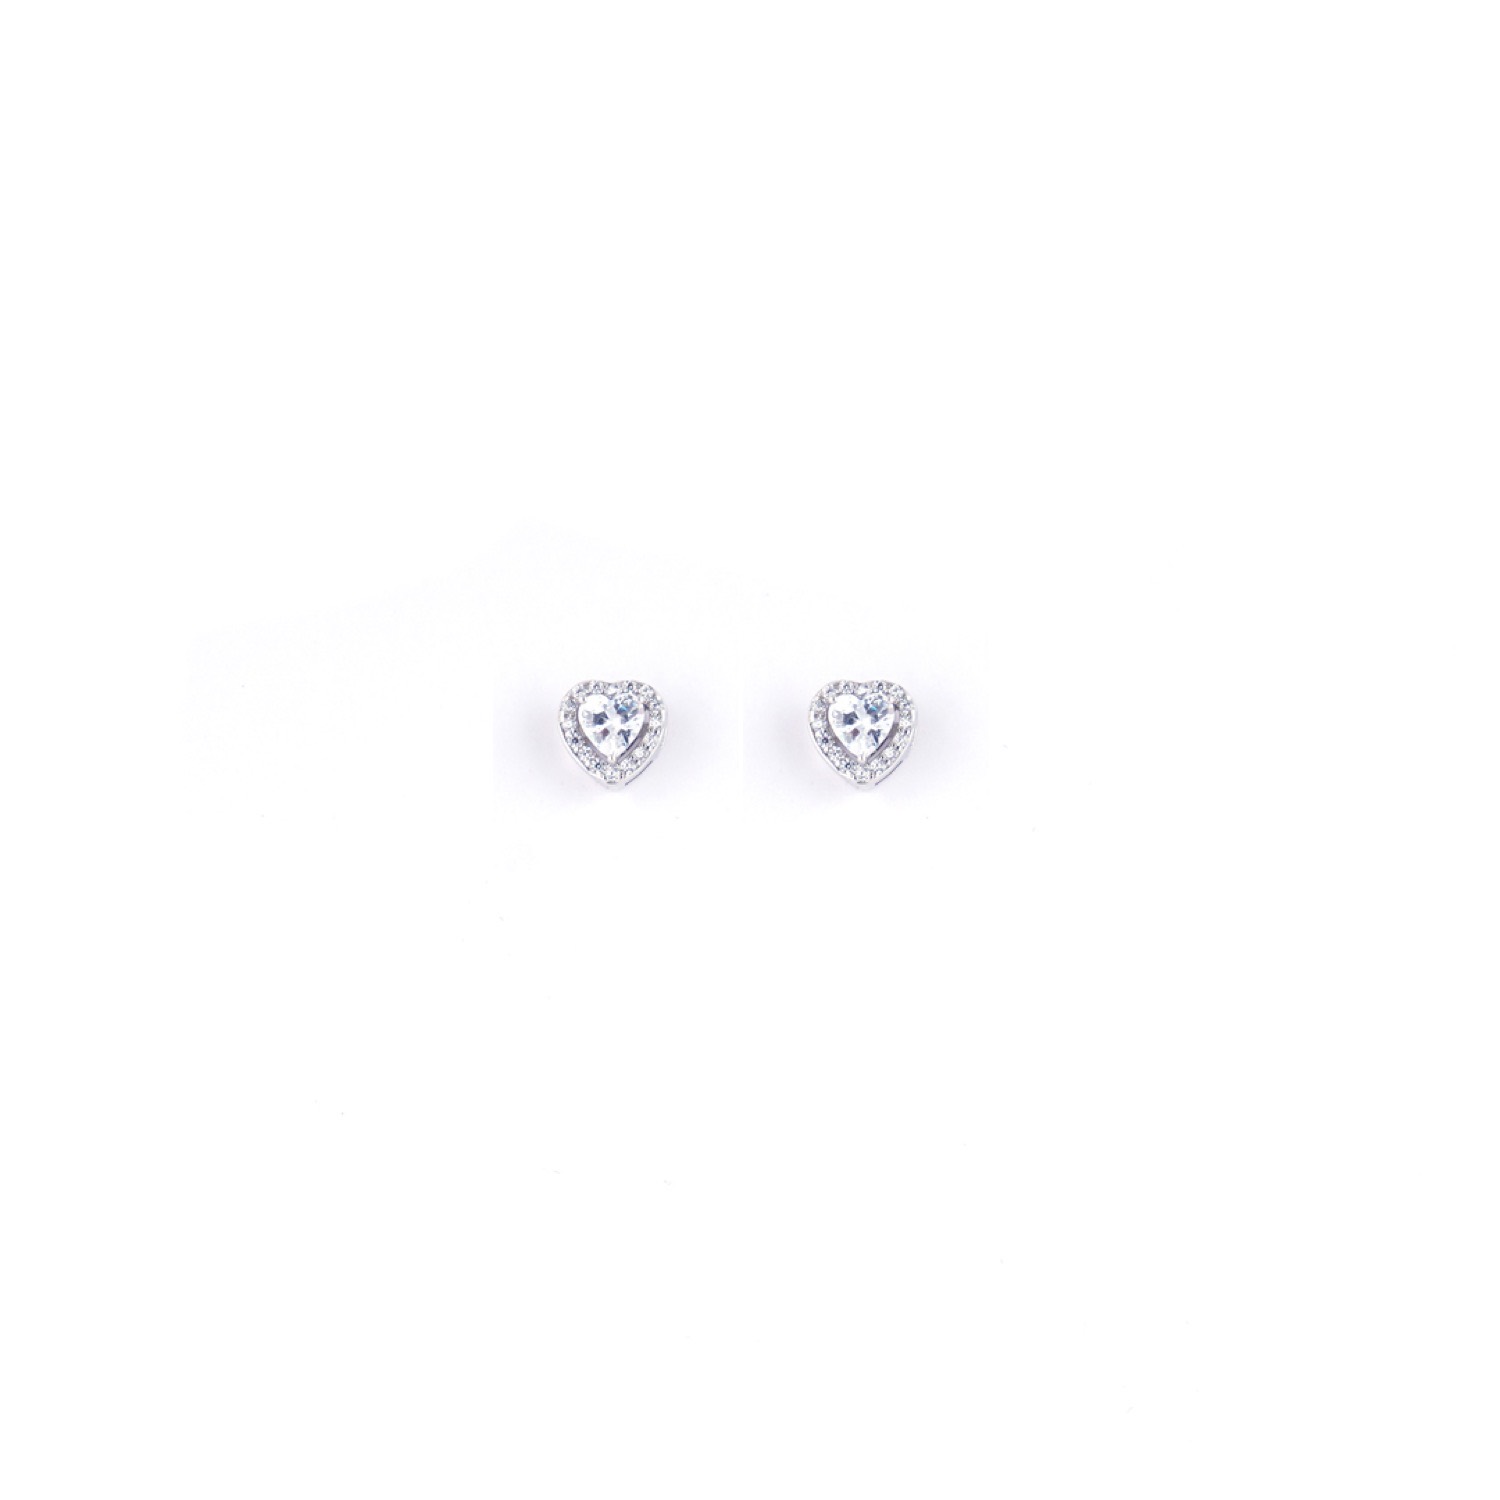 varam_earrings_102022_white_stone_heart_shaped_silver_earrings-1